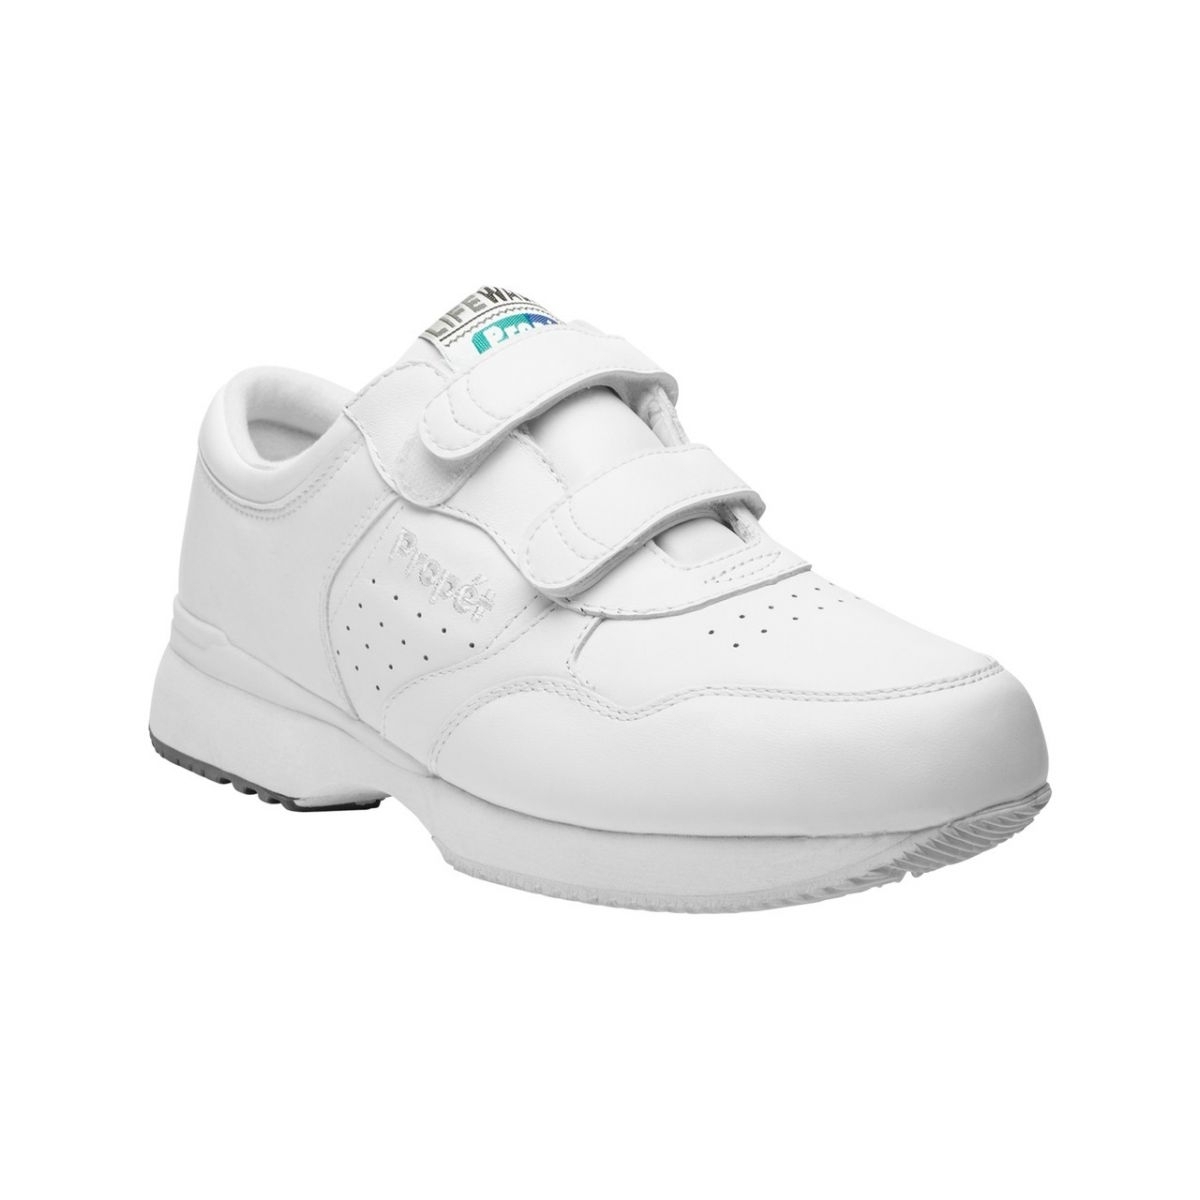 PropÃ©t Mens LifeWalker Strap Walking Walking Sneakers Athletic Shoes - Black 7 BLACK - WHITE, 12-3E